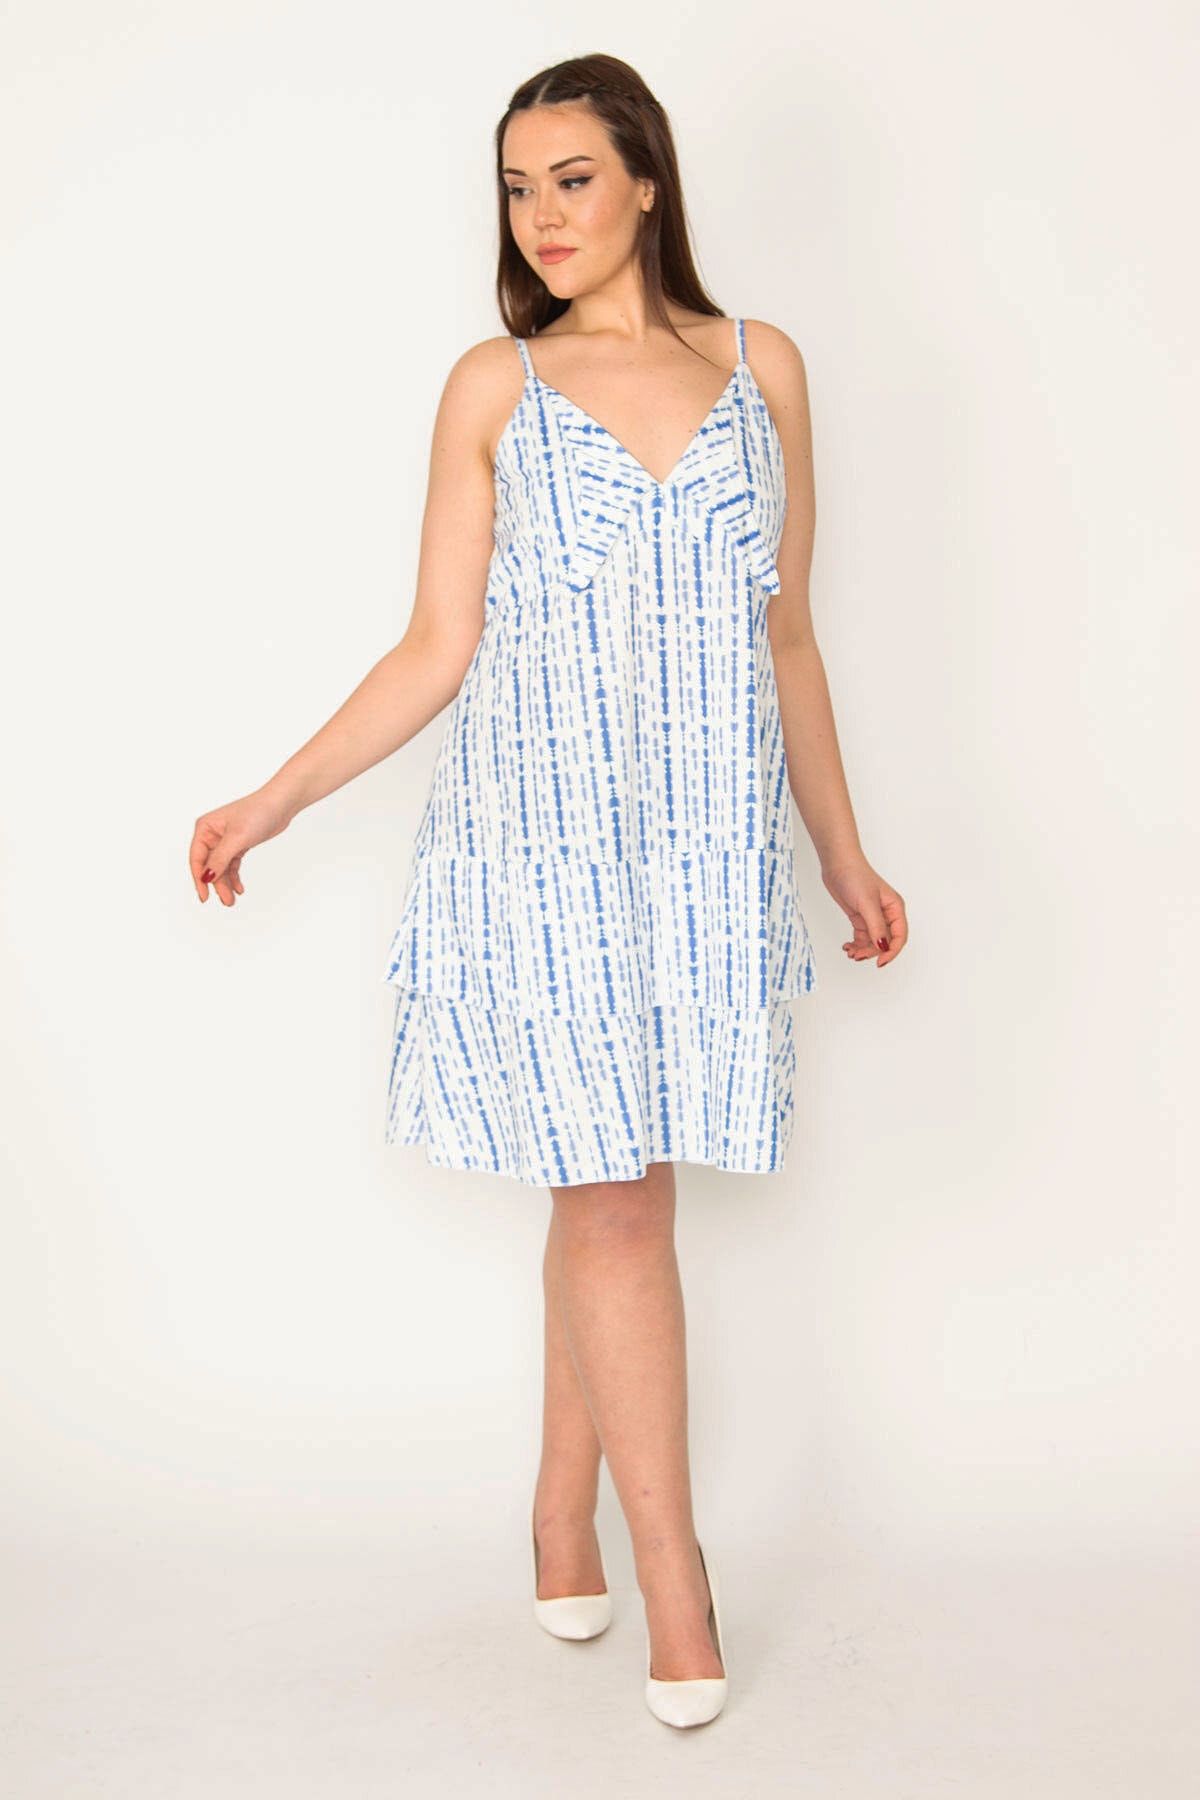 Şans Tekstil Kadın Mavi Yakadetaylı Etek Ucu Katlı Askılı Elbise 26a32464